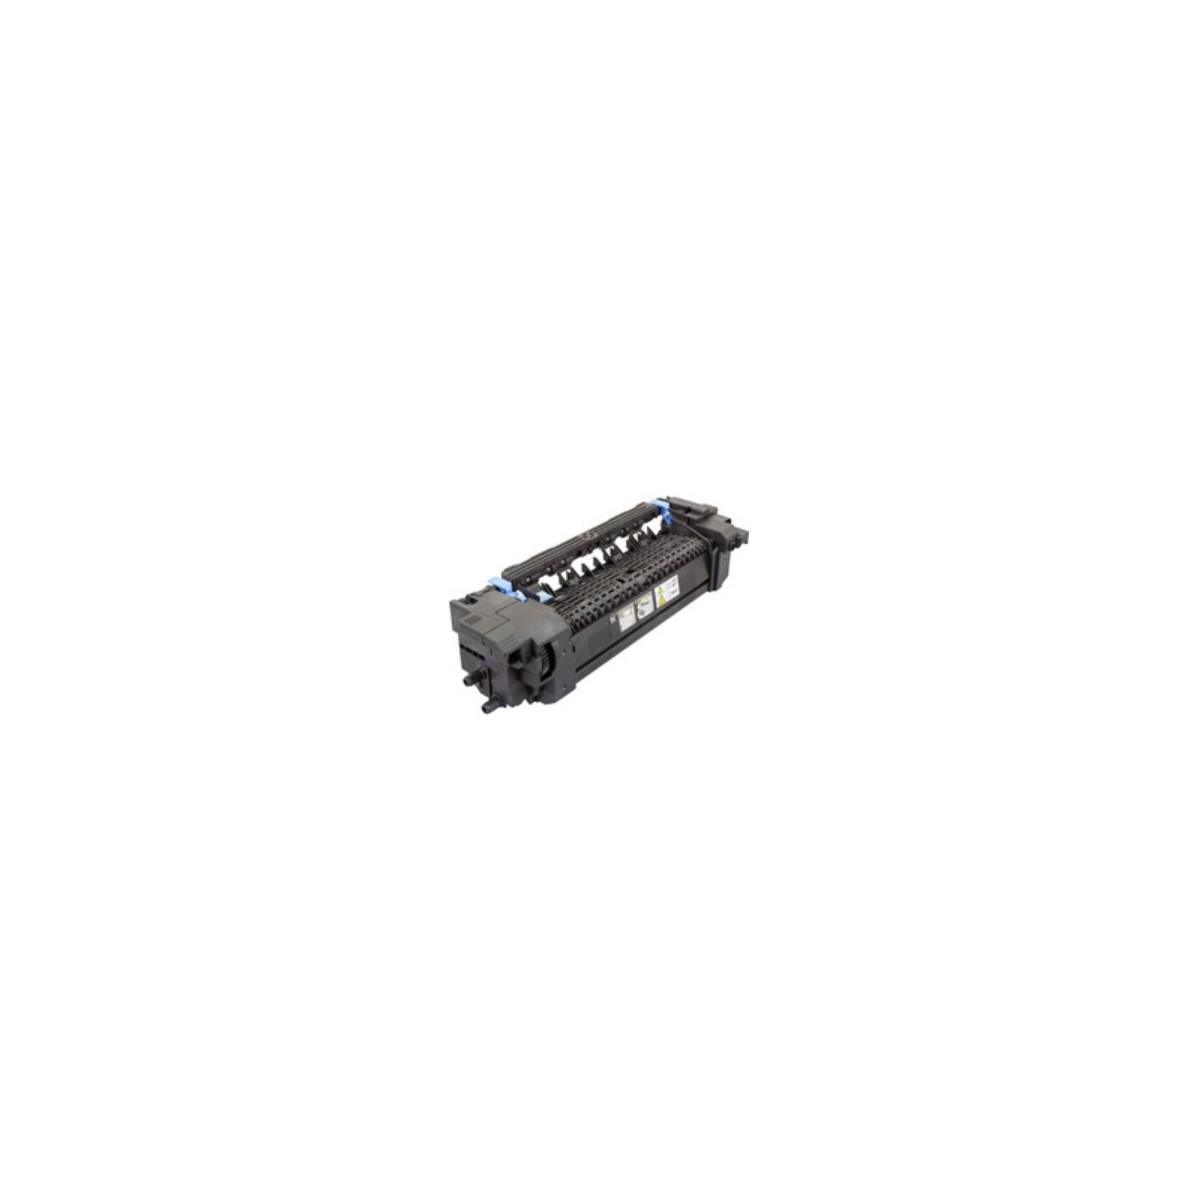 Dell PC5HW - Laser - Dell - 2150CDN - 2155CDN - 2155CN - 2150CN